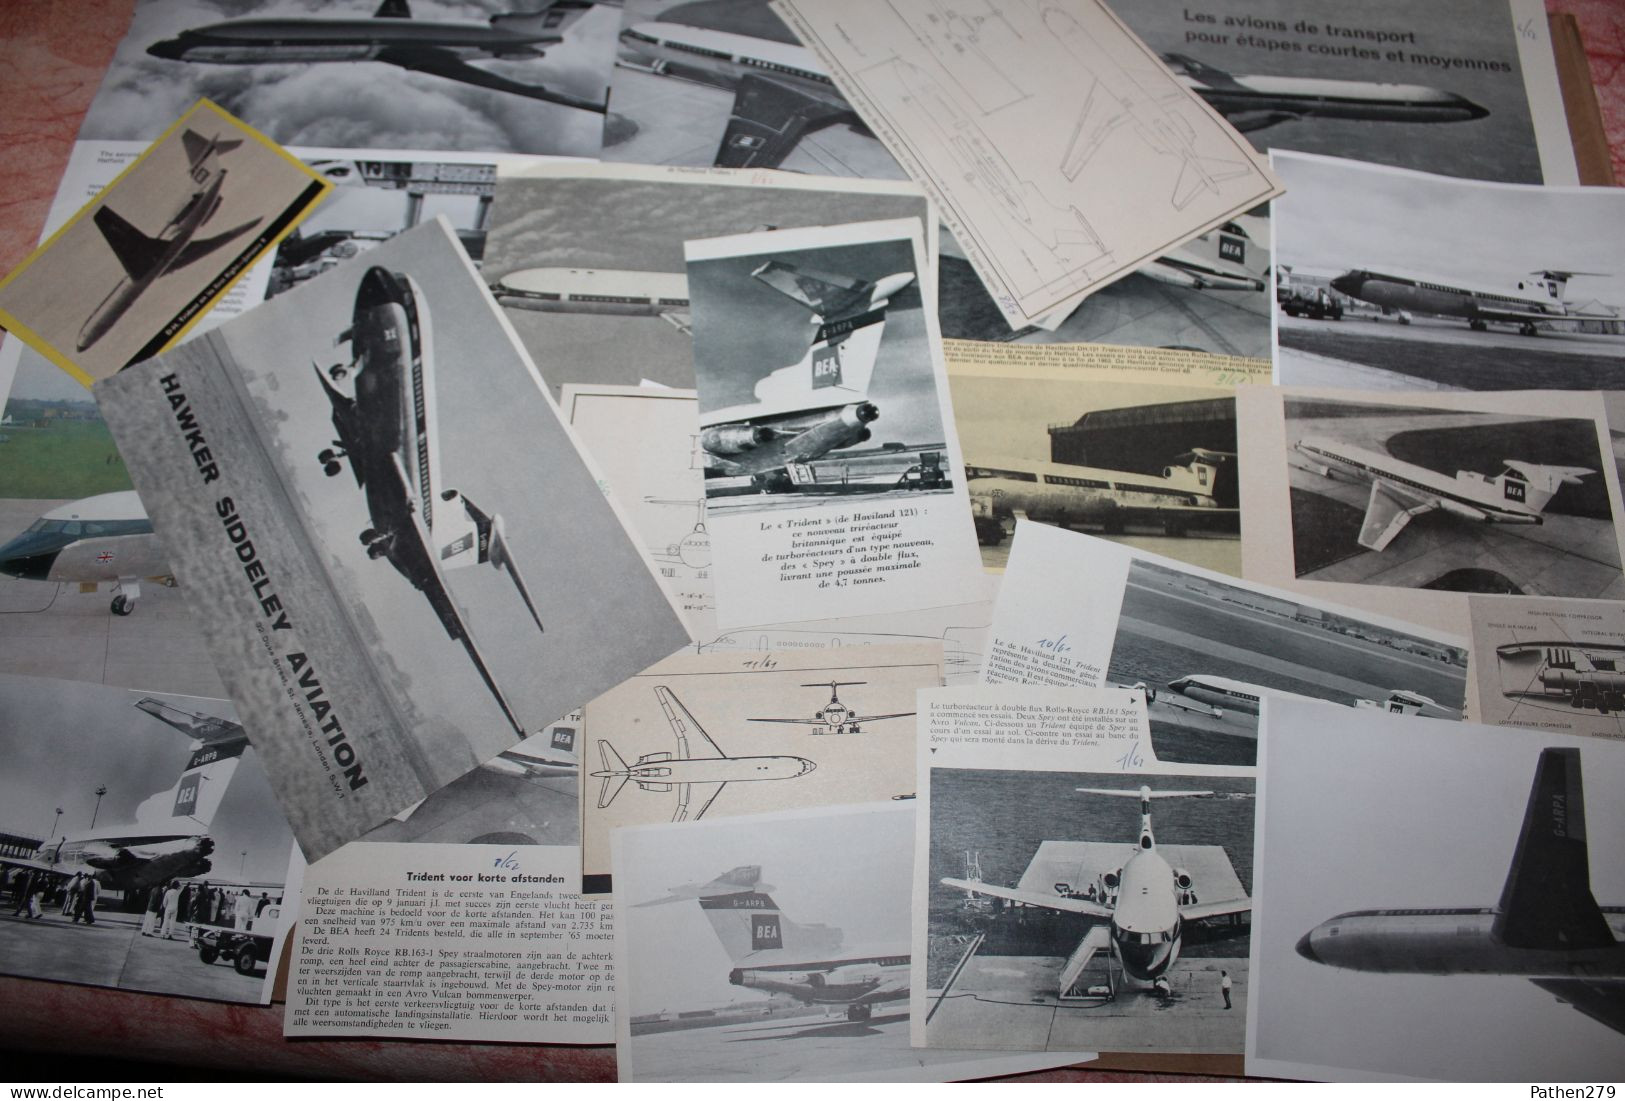 Lot de 271g d'anciennes coupures de presse de l'aéronef britannique De Havilland DH-121 "Trident"